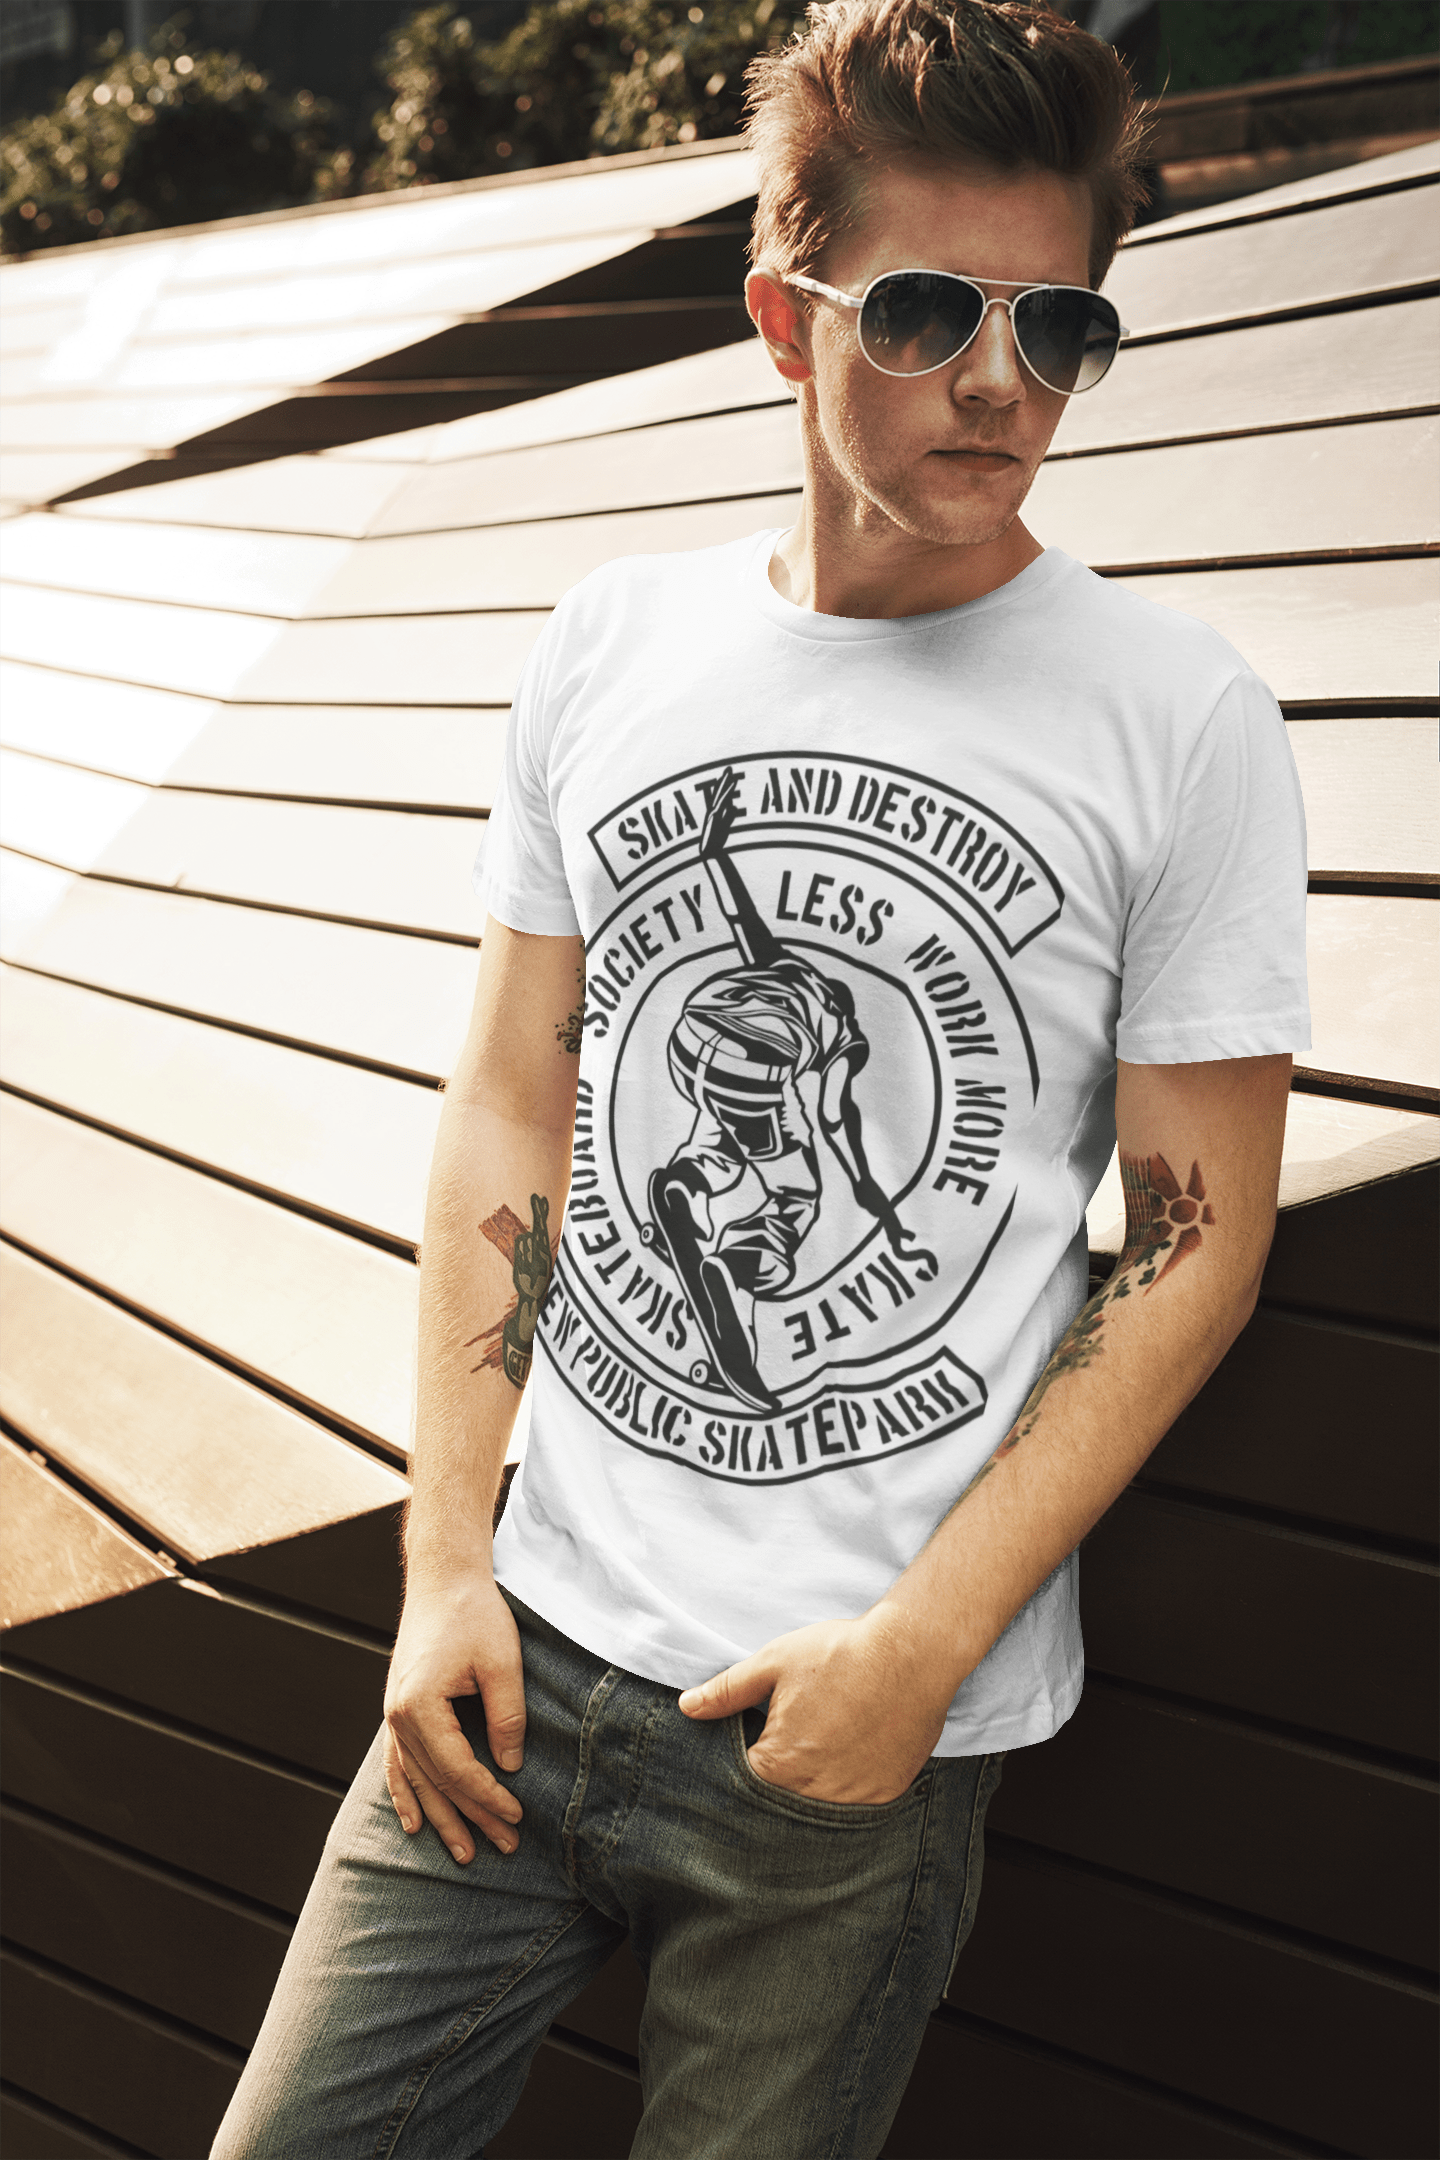 ULTRABASIC Men's Graphic T-Shirt Skate and Destroy - Skateboard Tee Shirt